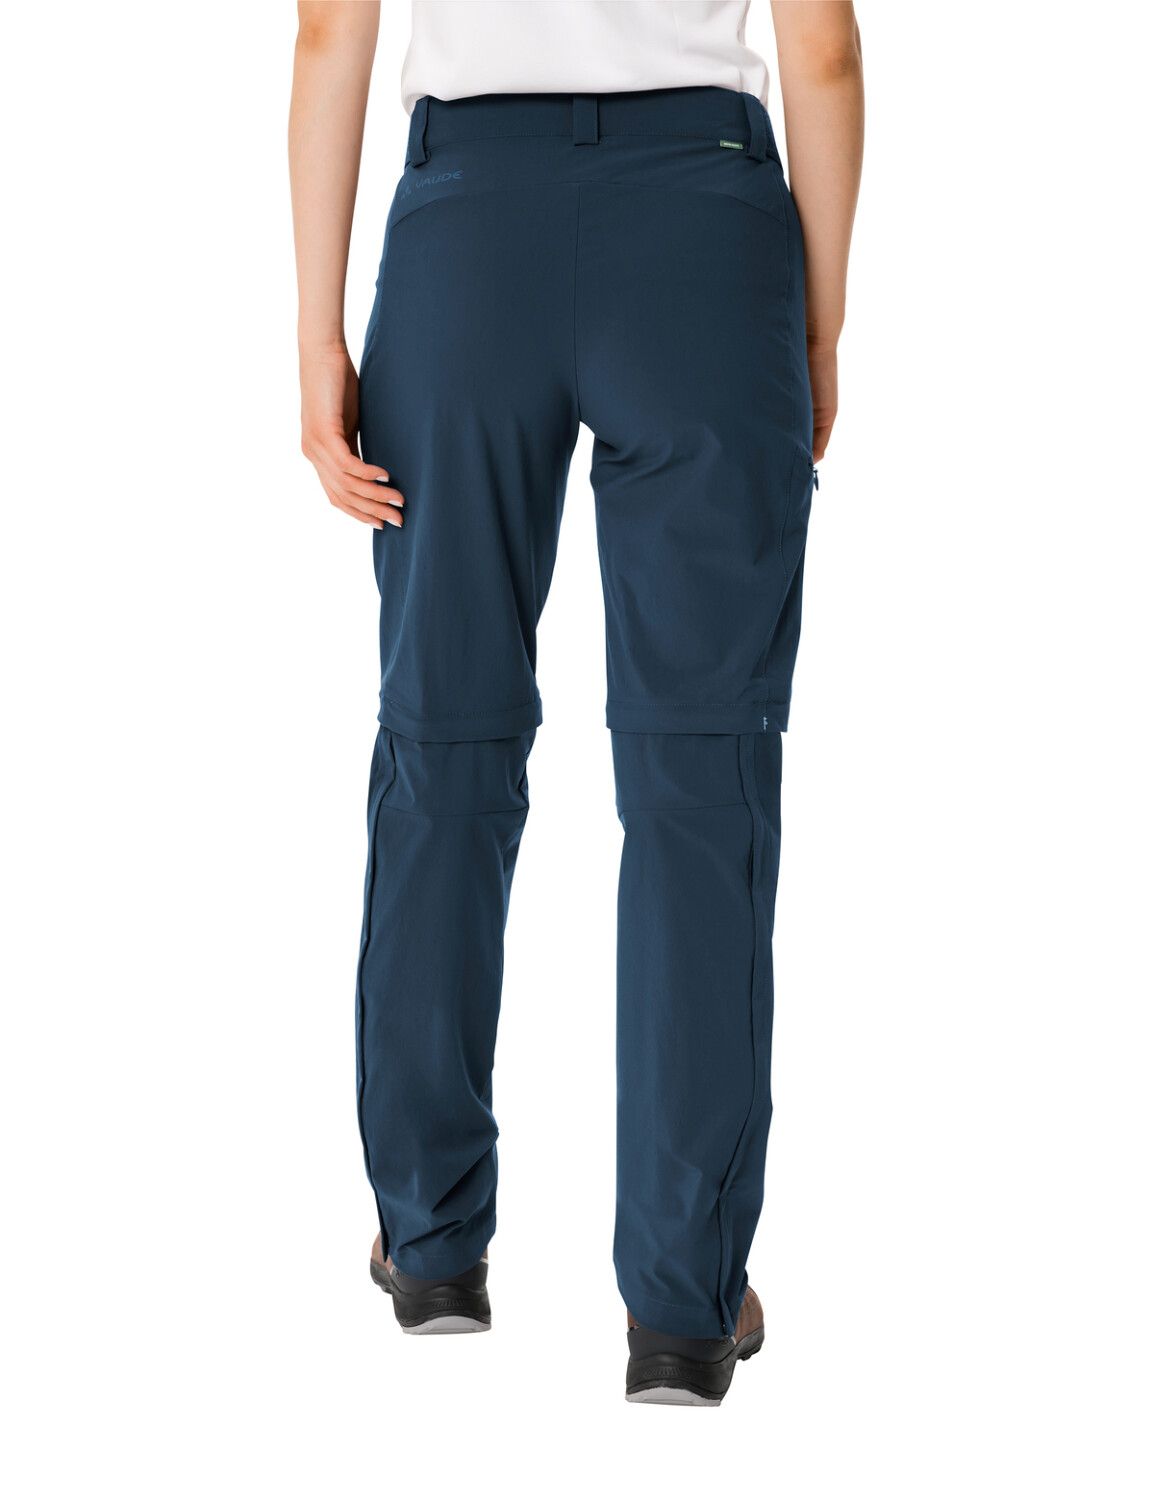 VAUDE Women's Farley Stretch ZO T-Zip Pants II (Bild 25)